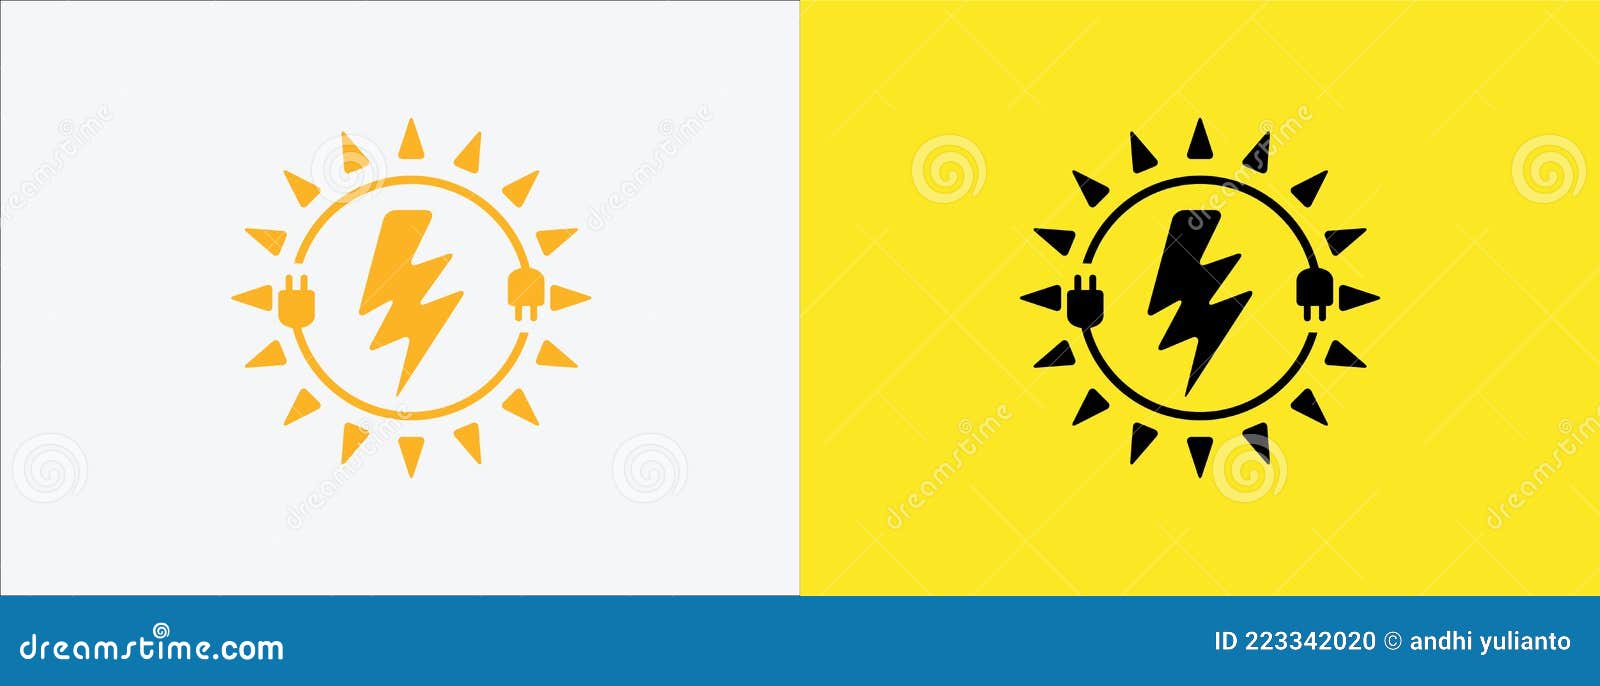 Icono de enchufe eléctrico y sol concepto de energía solar